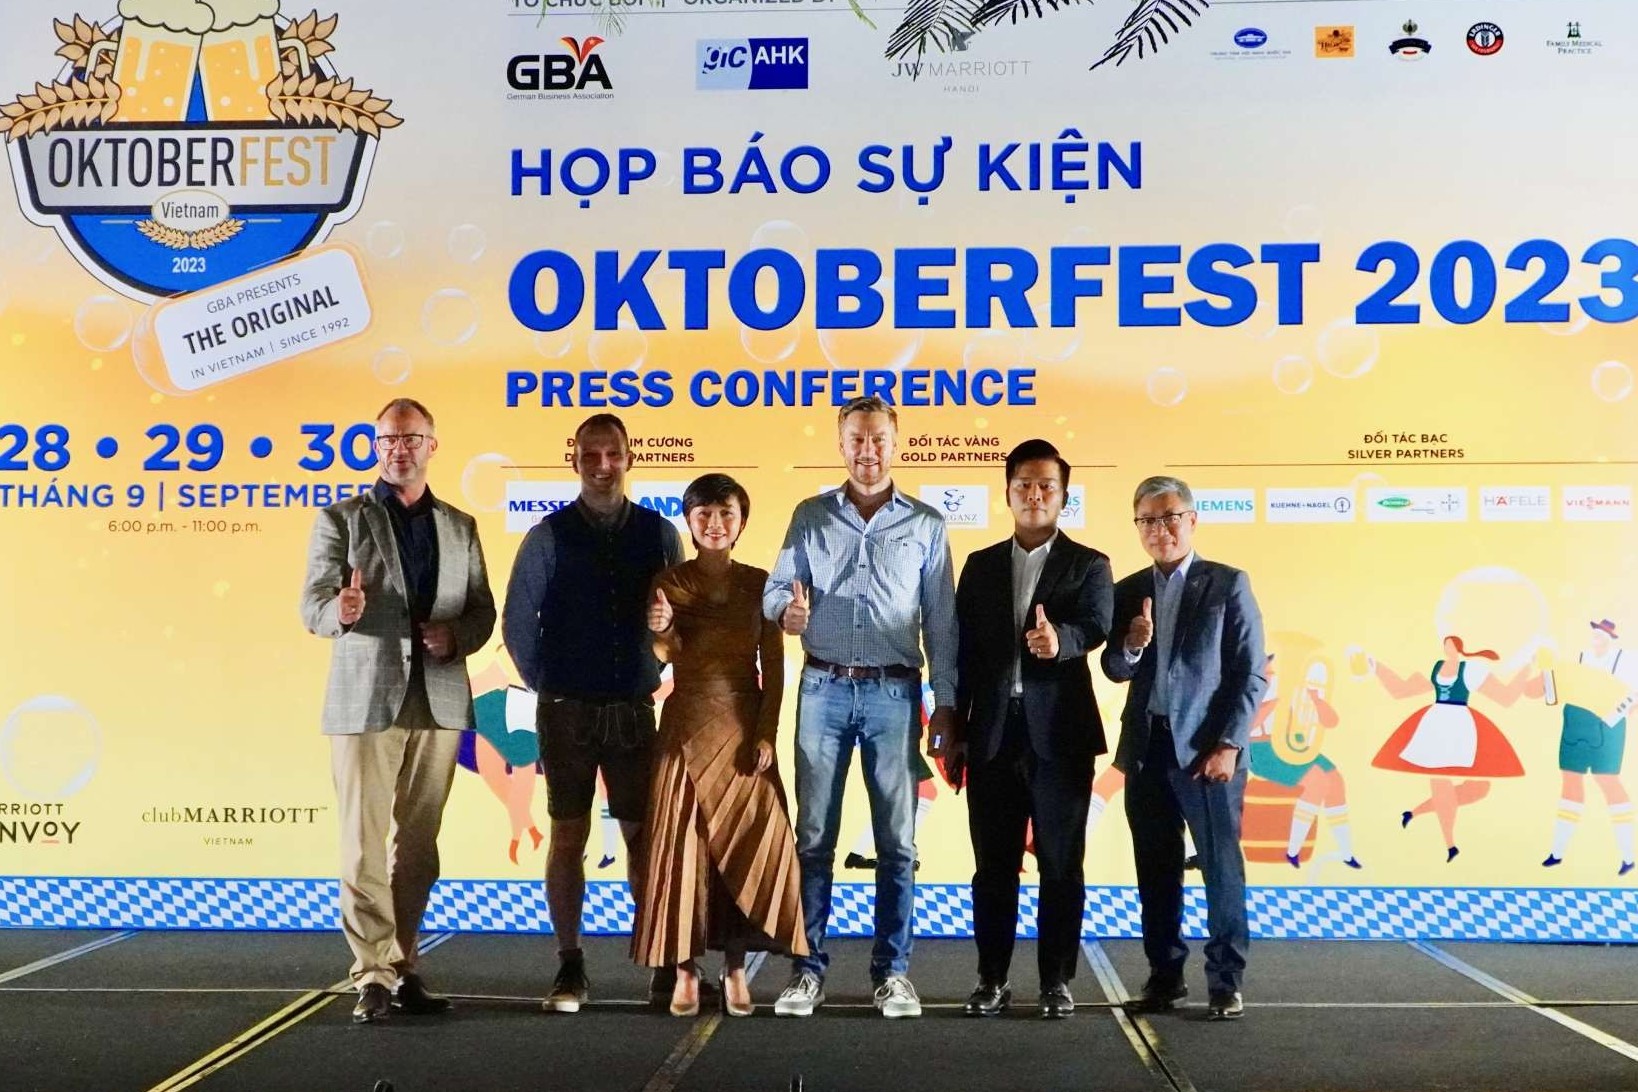 Lễ hội GBA Oktoberfest 2023 sẽ diễn ra tại 3 thành phố lớn của Việt Nam